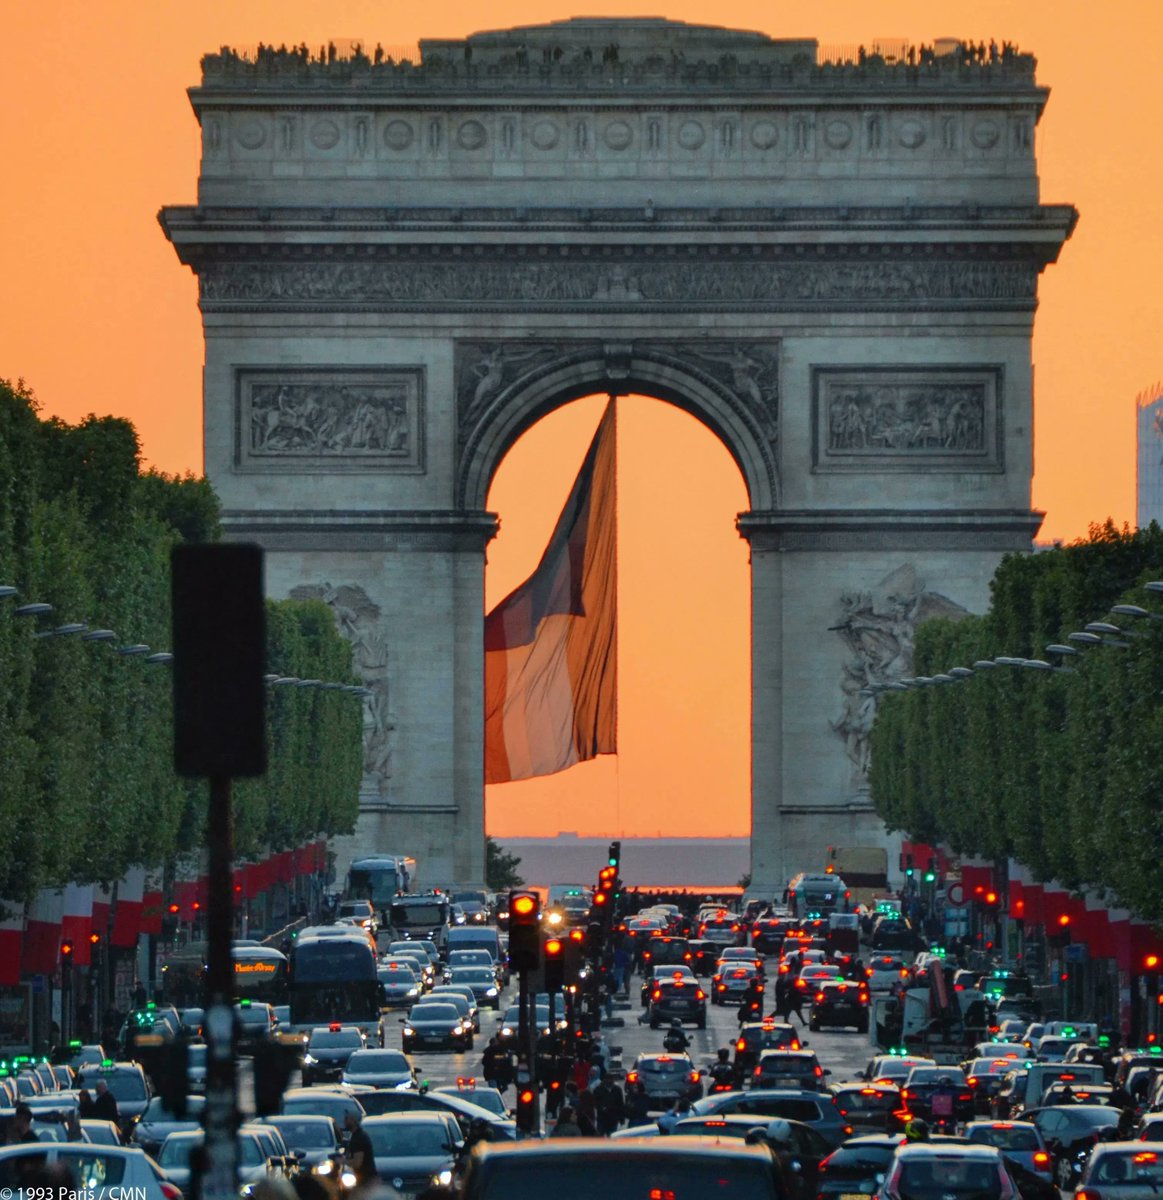 #LeSaviezVous Tous les ans, aux alentours du 10 mai, le soleil se couche pile dans l'axe de l'@ArcDeTriomphe. Un spectacle à ne pas manquer ! 🌇 Le monument étant ouvert jusqu'à 23h, vous pouvez aussi monter au sommet pour profiter de l''heure dorée' ☀️ : paris-arc-de-triomphe.fr/visiter/inform…